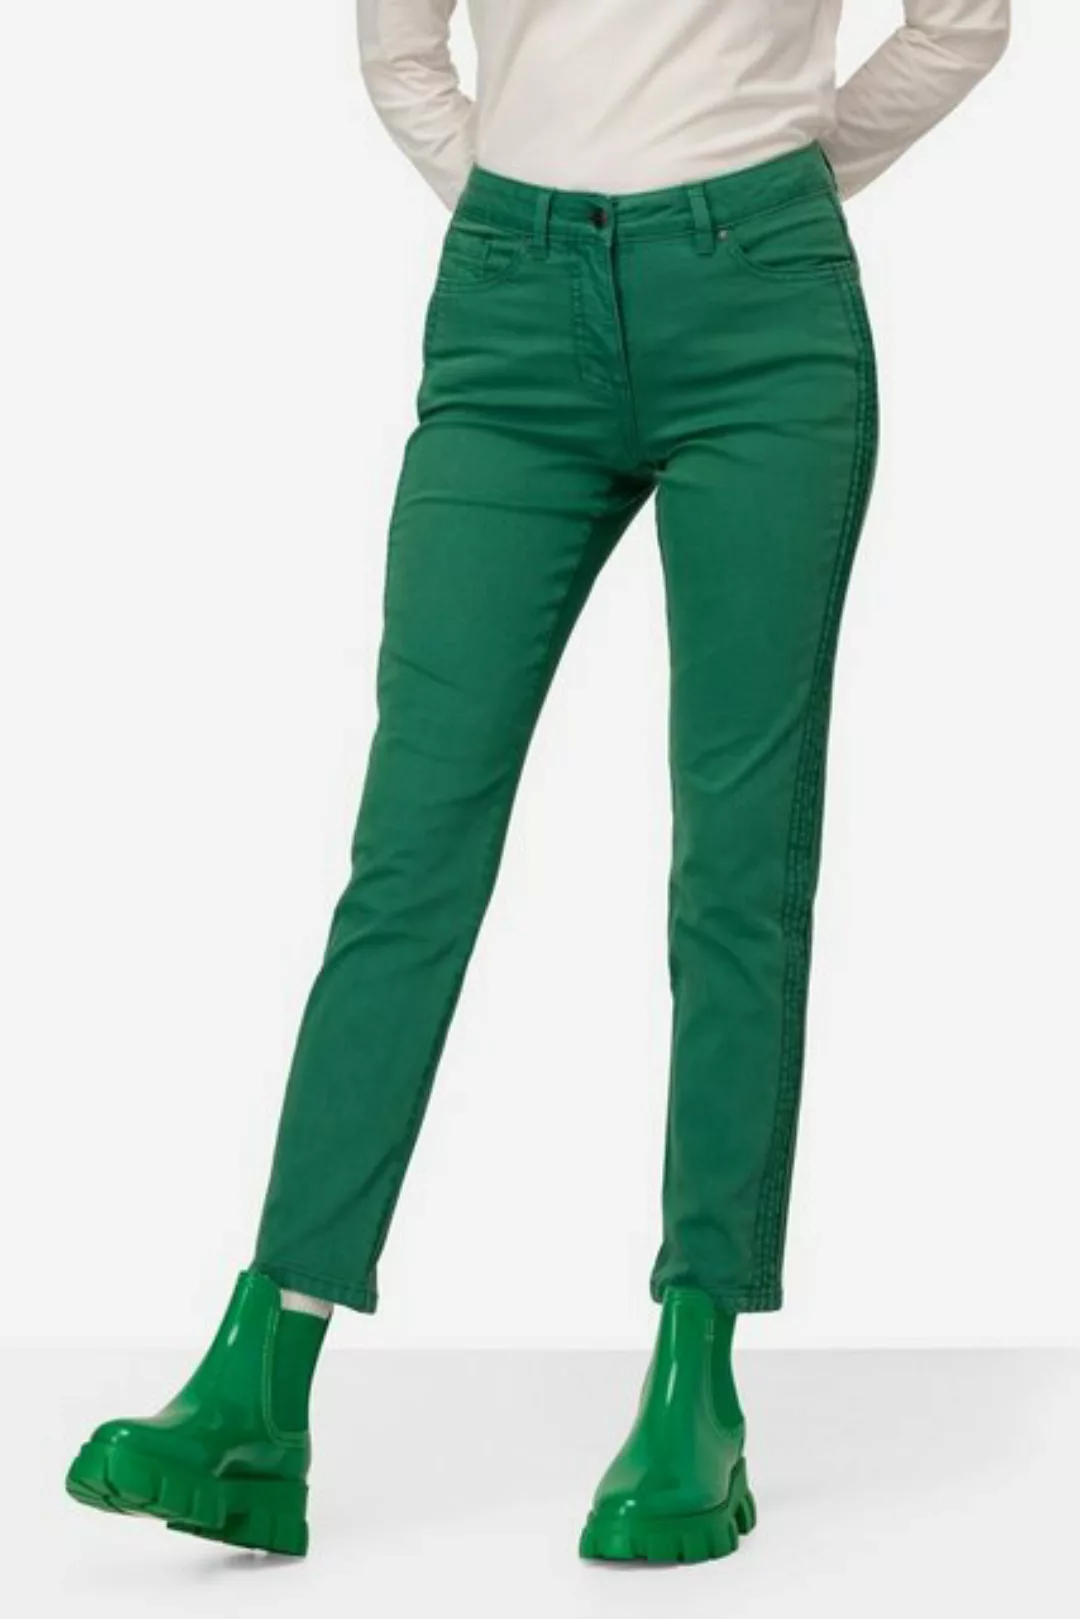 Laurasøn 5-Pocket-Jeans Jeans Tina gerade Passform seitliche Zierfalten günstig online kaufen